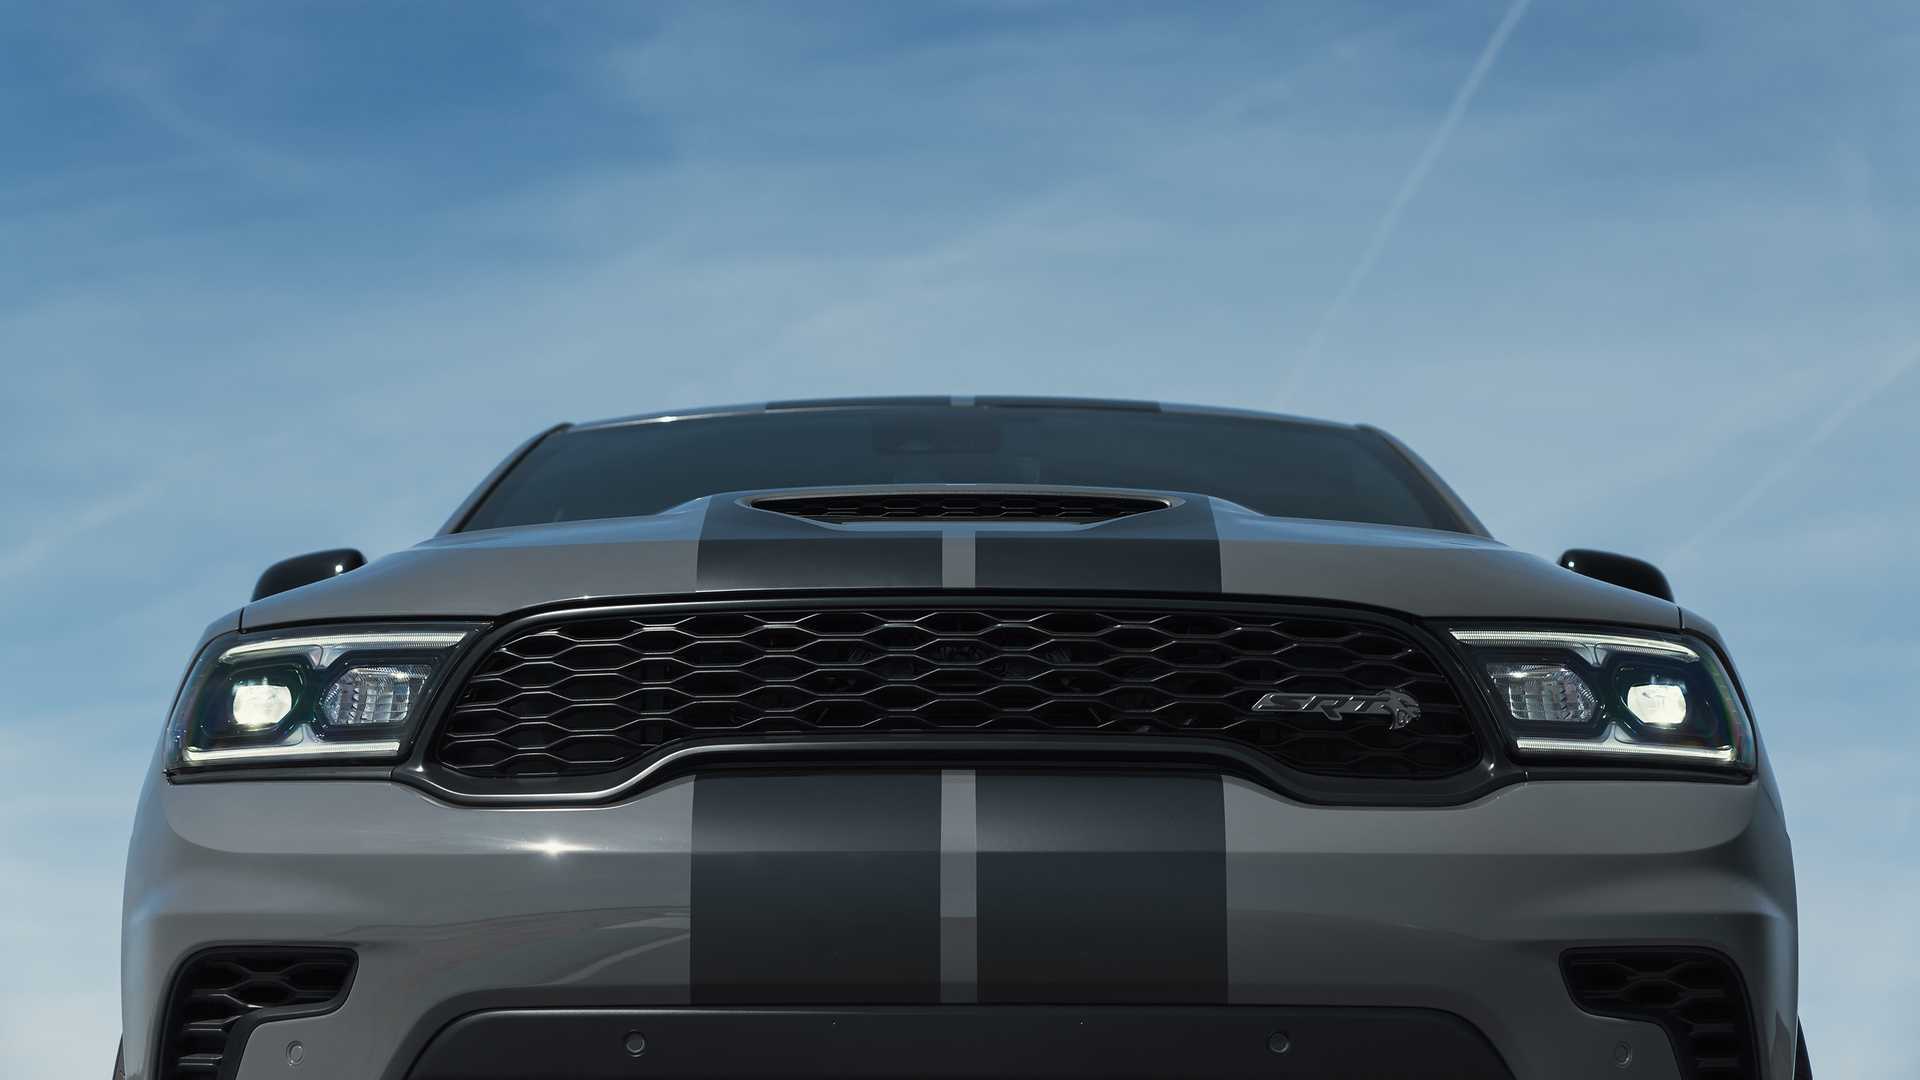 دودج تكشف عن دورانجو SRT هيلكات 2021 كأقوى SUV في العالم 71